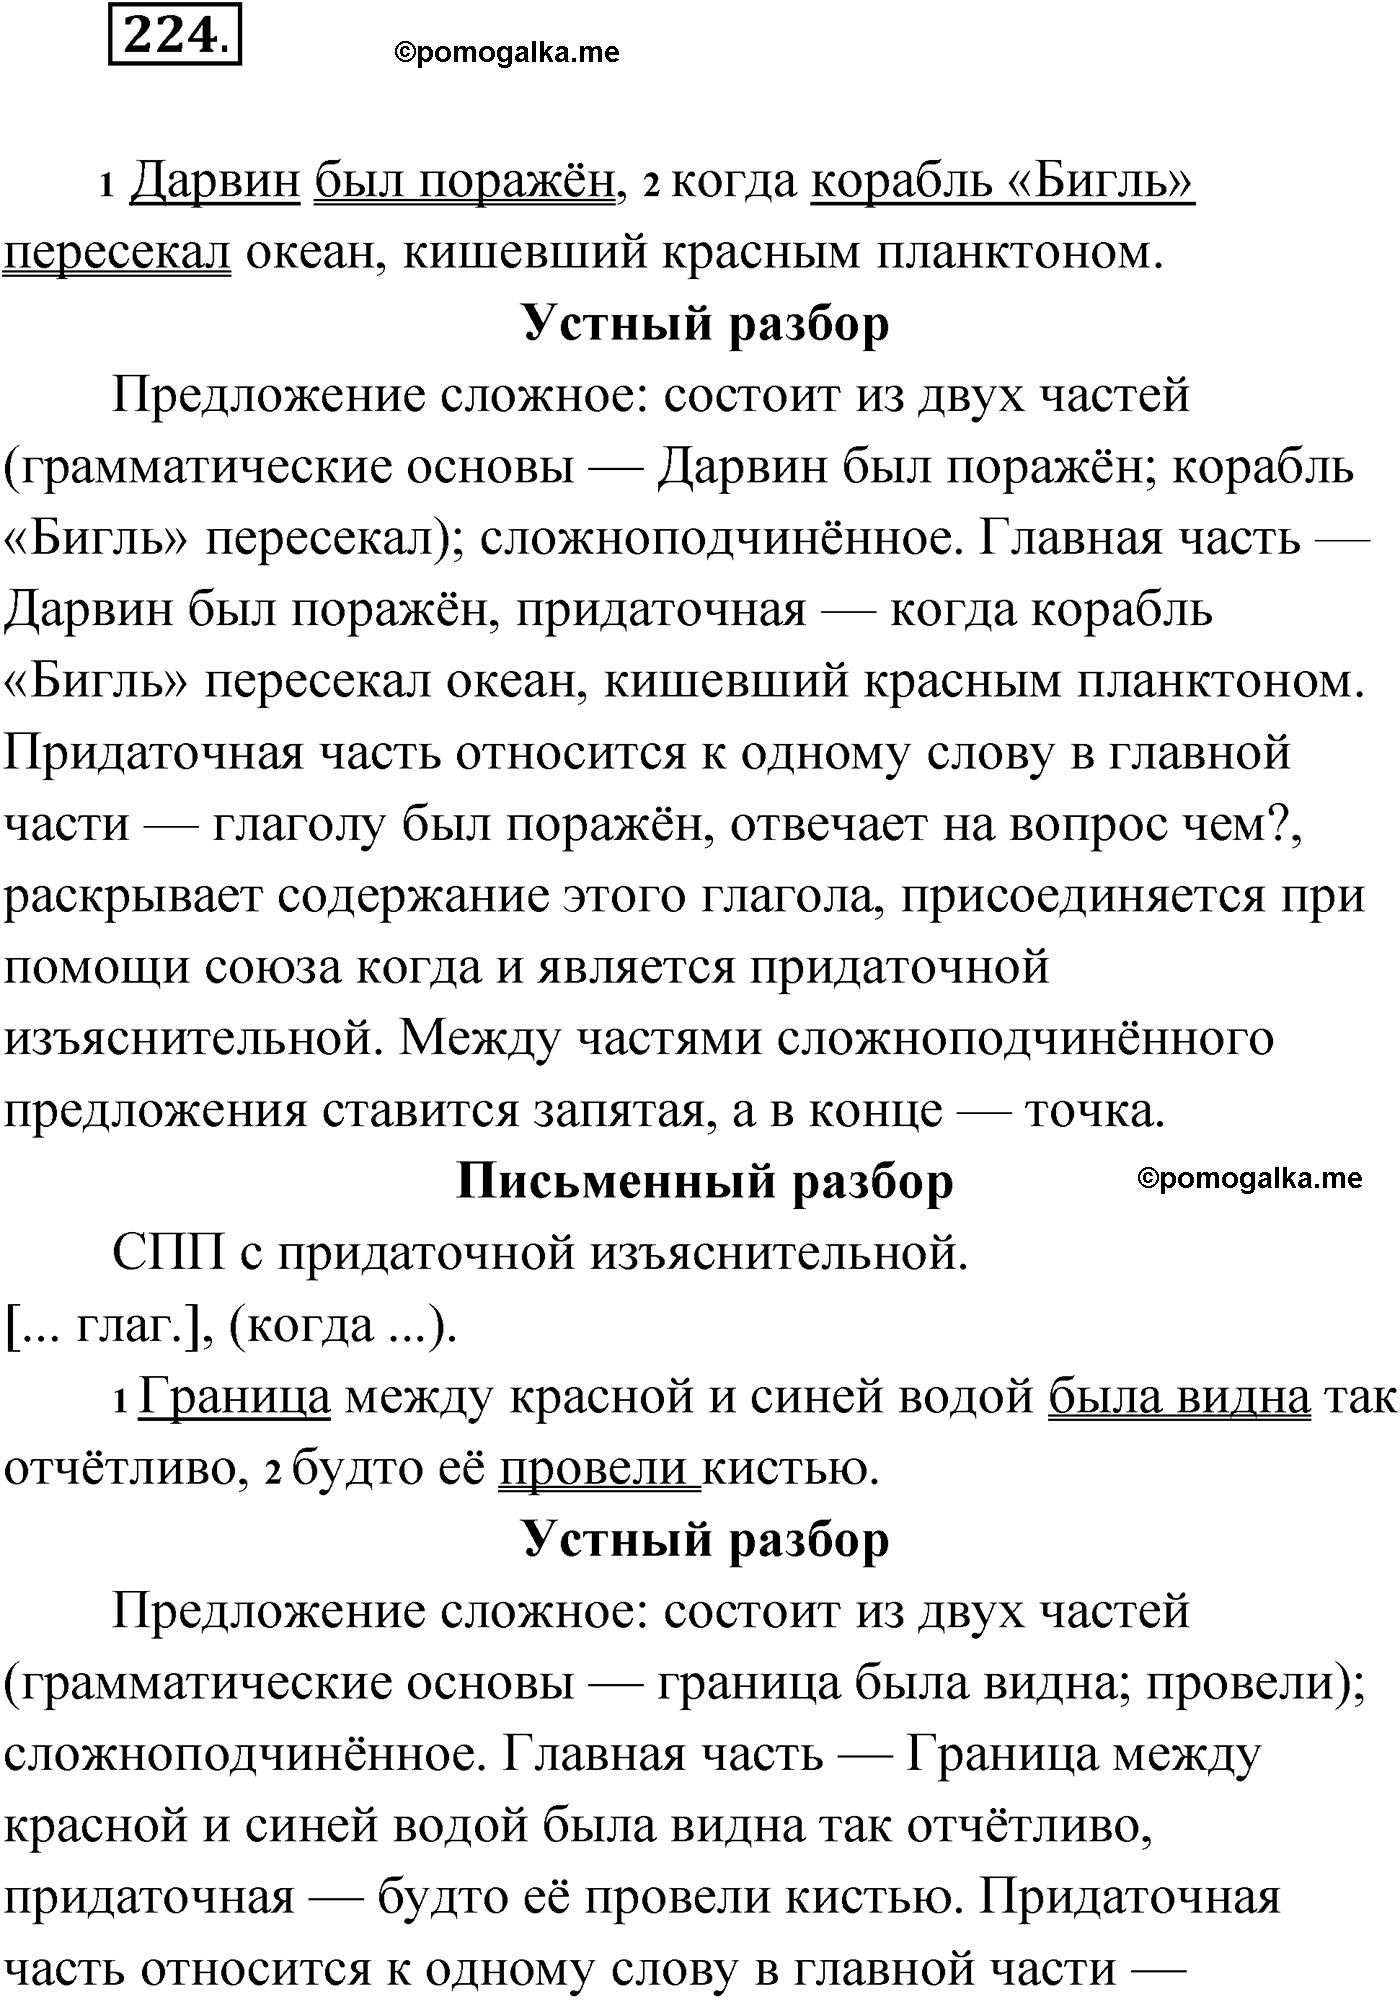 упражнение №224 русский язык 9 класс Мурина 2019 год